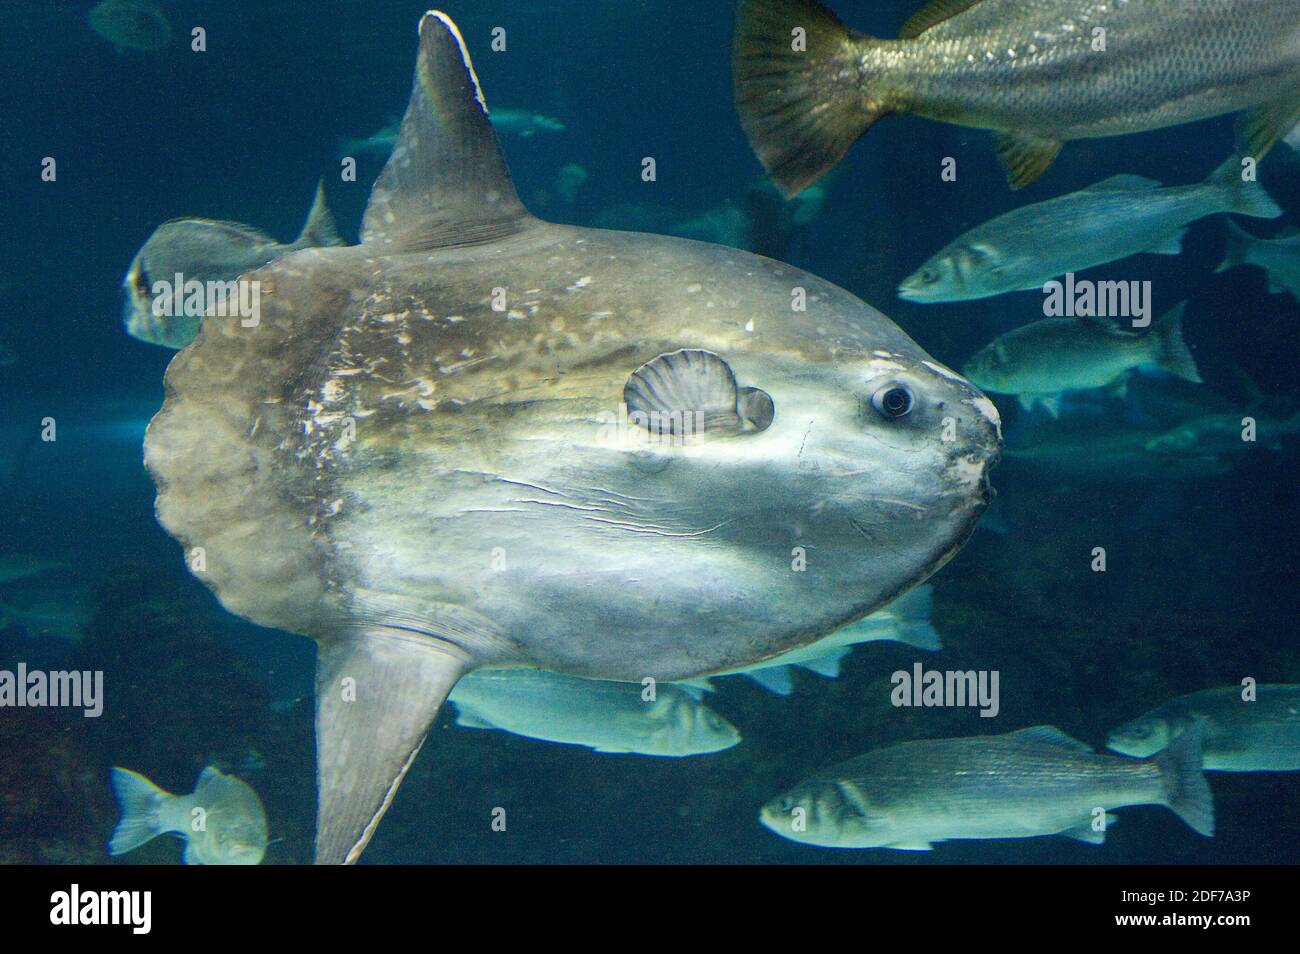 El pez sol del océano (Mola mola) es un gran pez marino nativo de las aguas oceánicas tropicales y templadas. Foto de stock